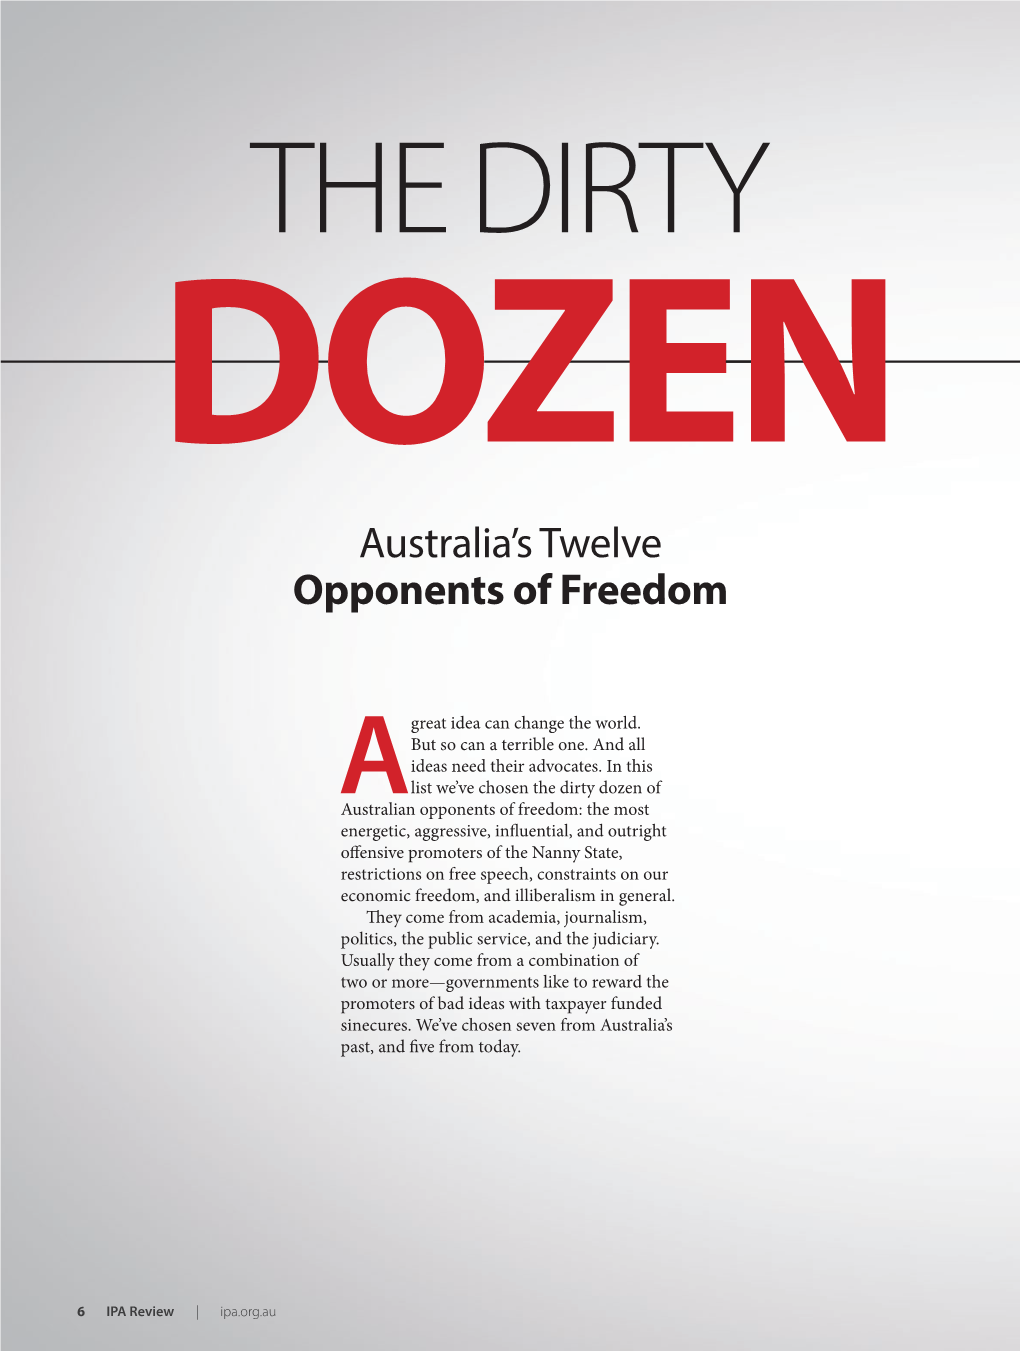 Australia's Twelve Opponents of Freedom